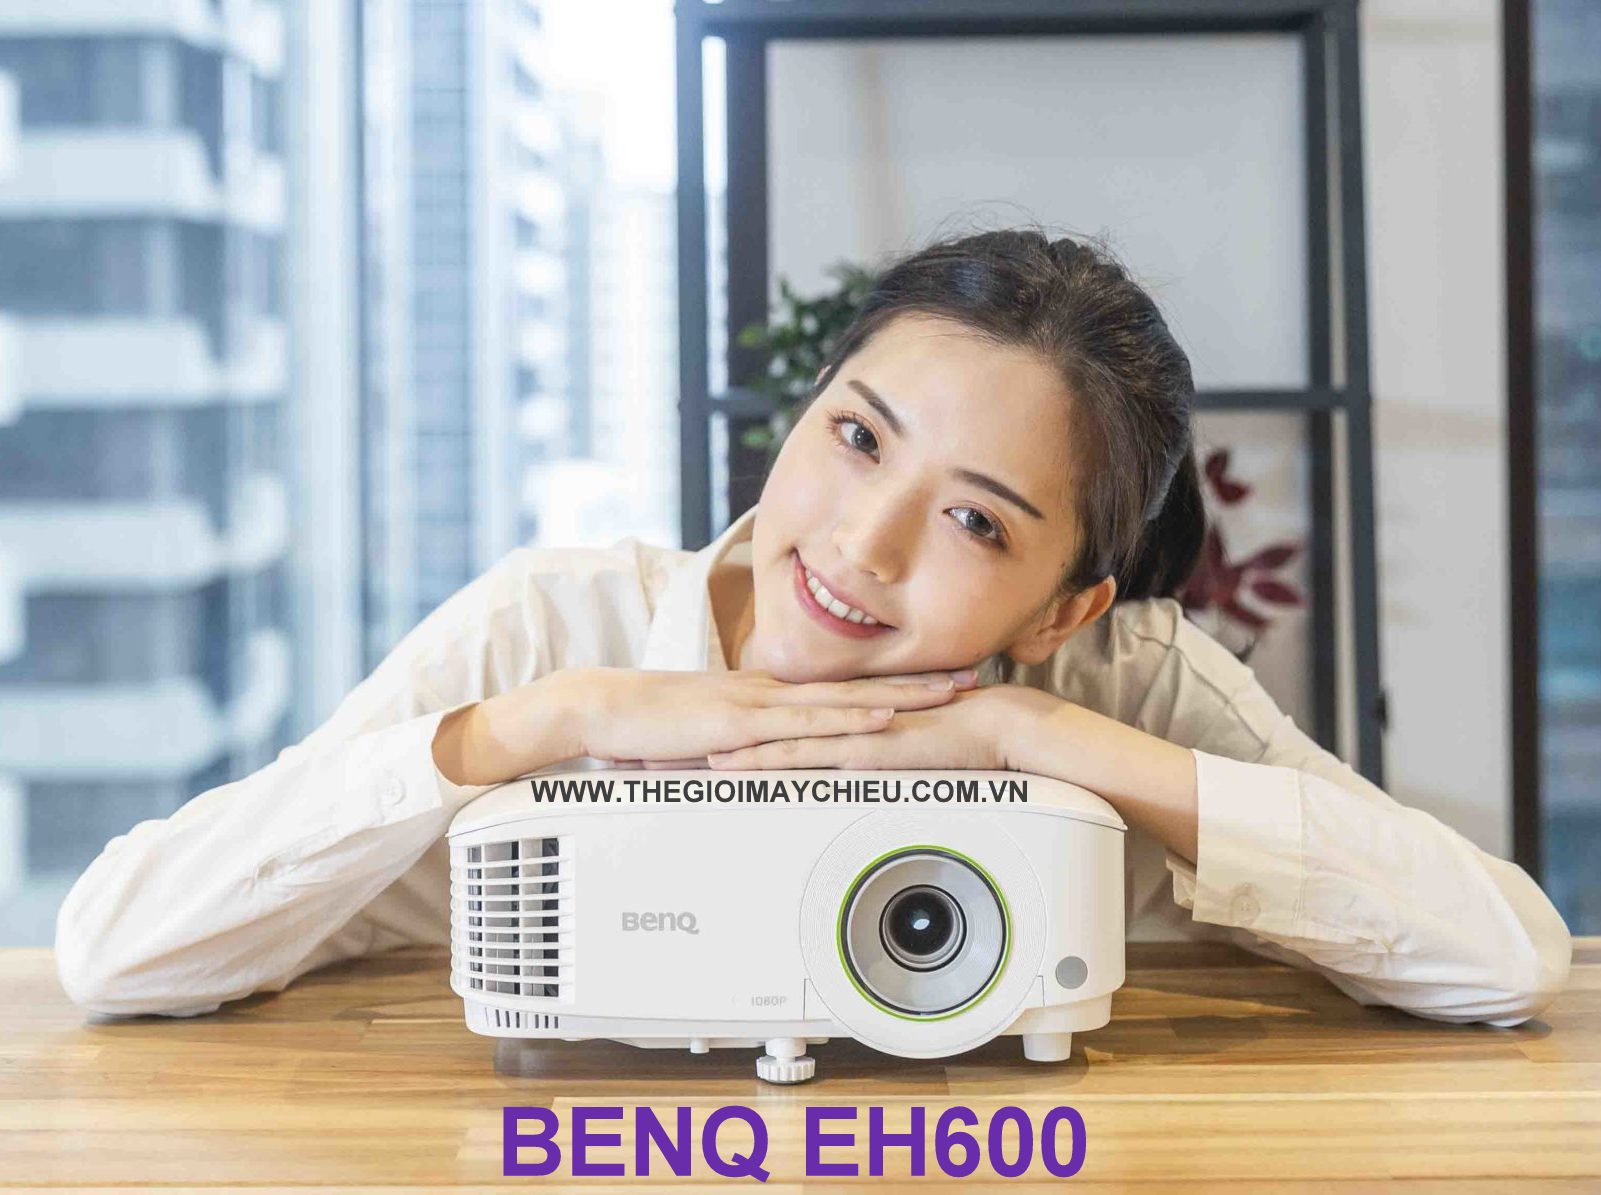 Đánh giá máy chiếu BenQ EH600